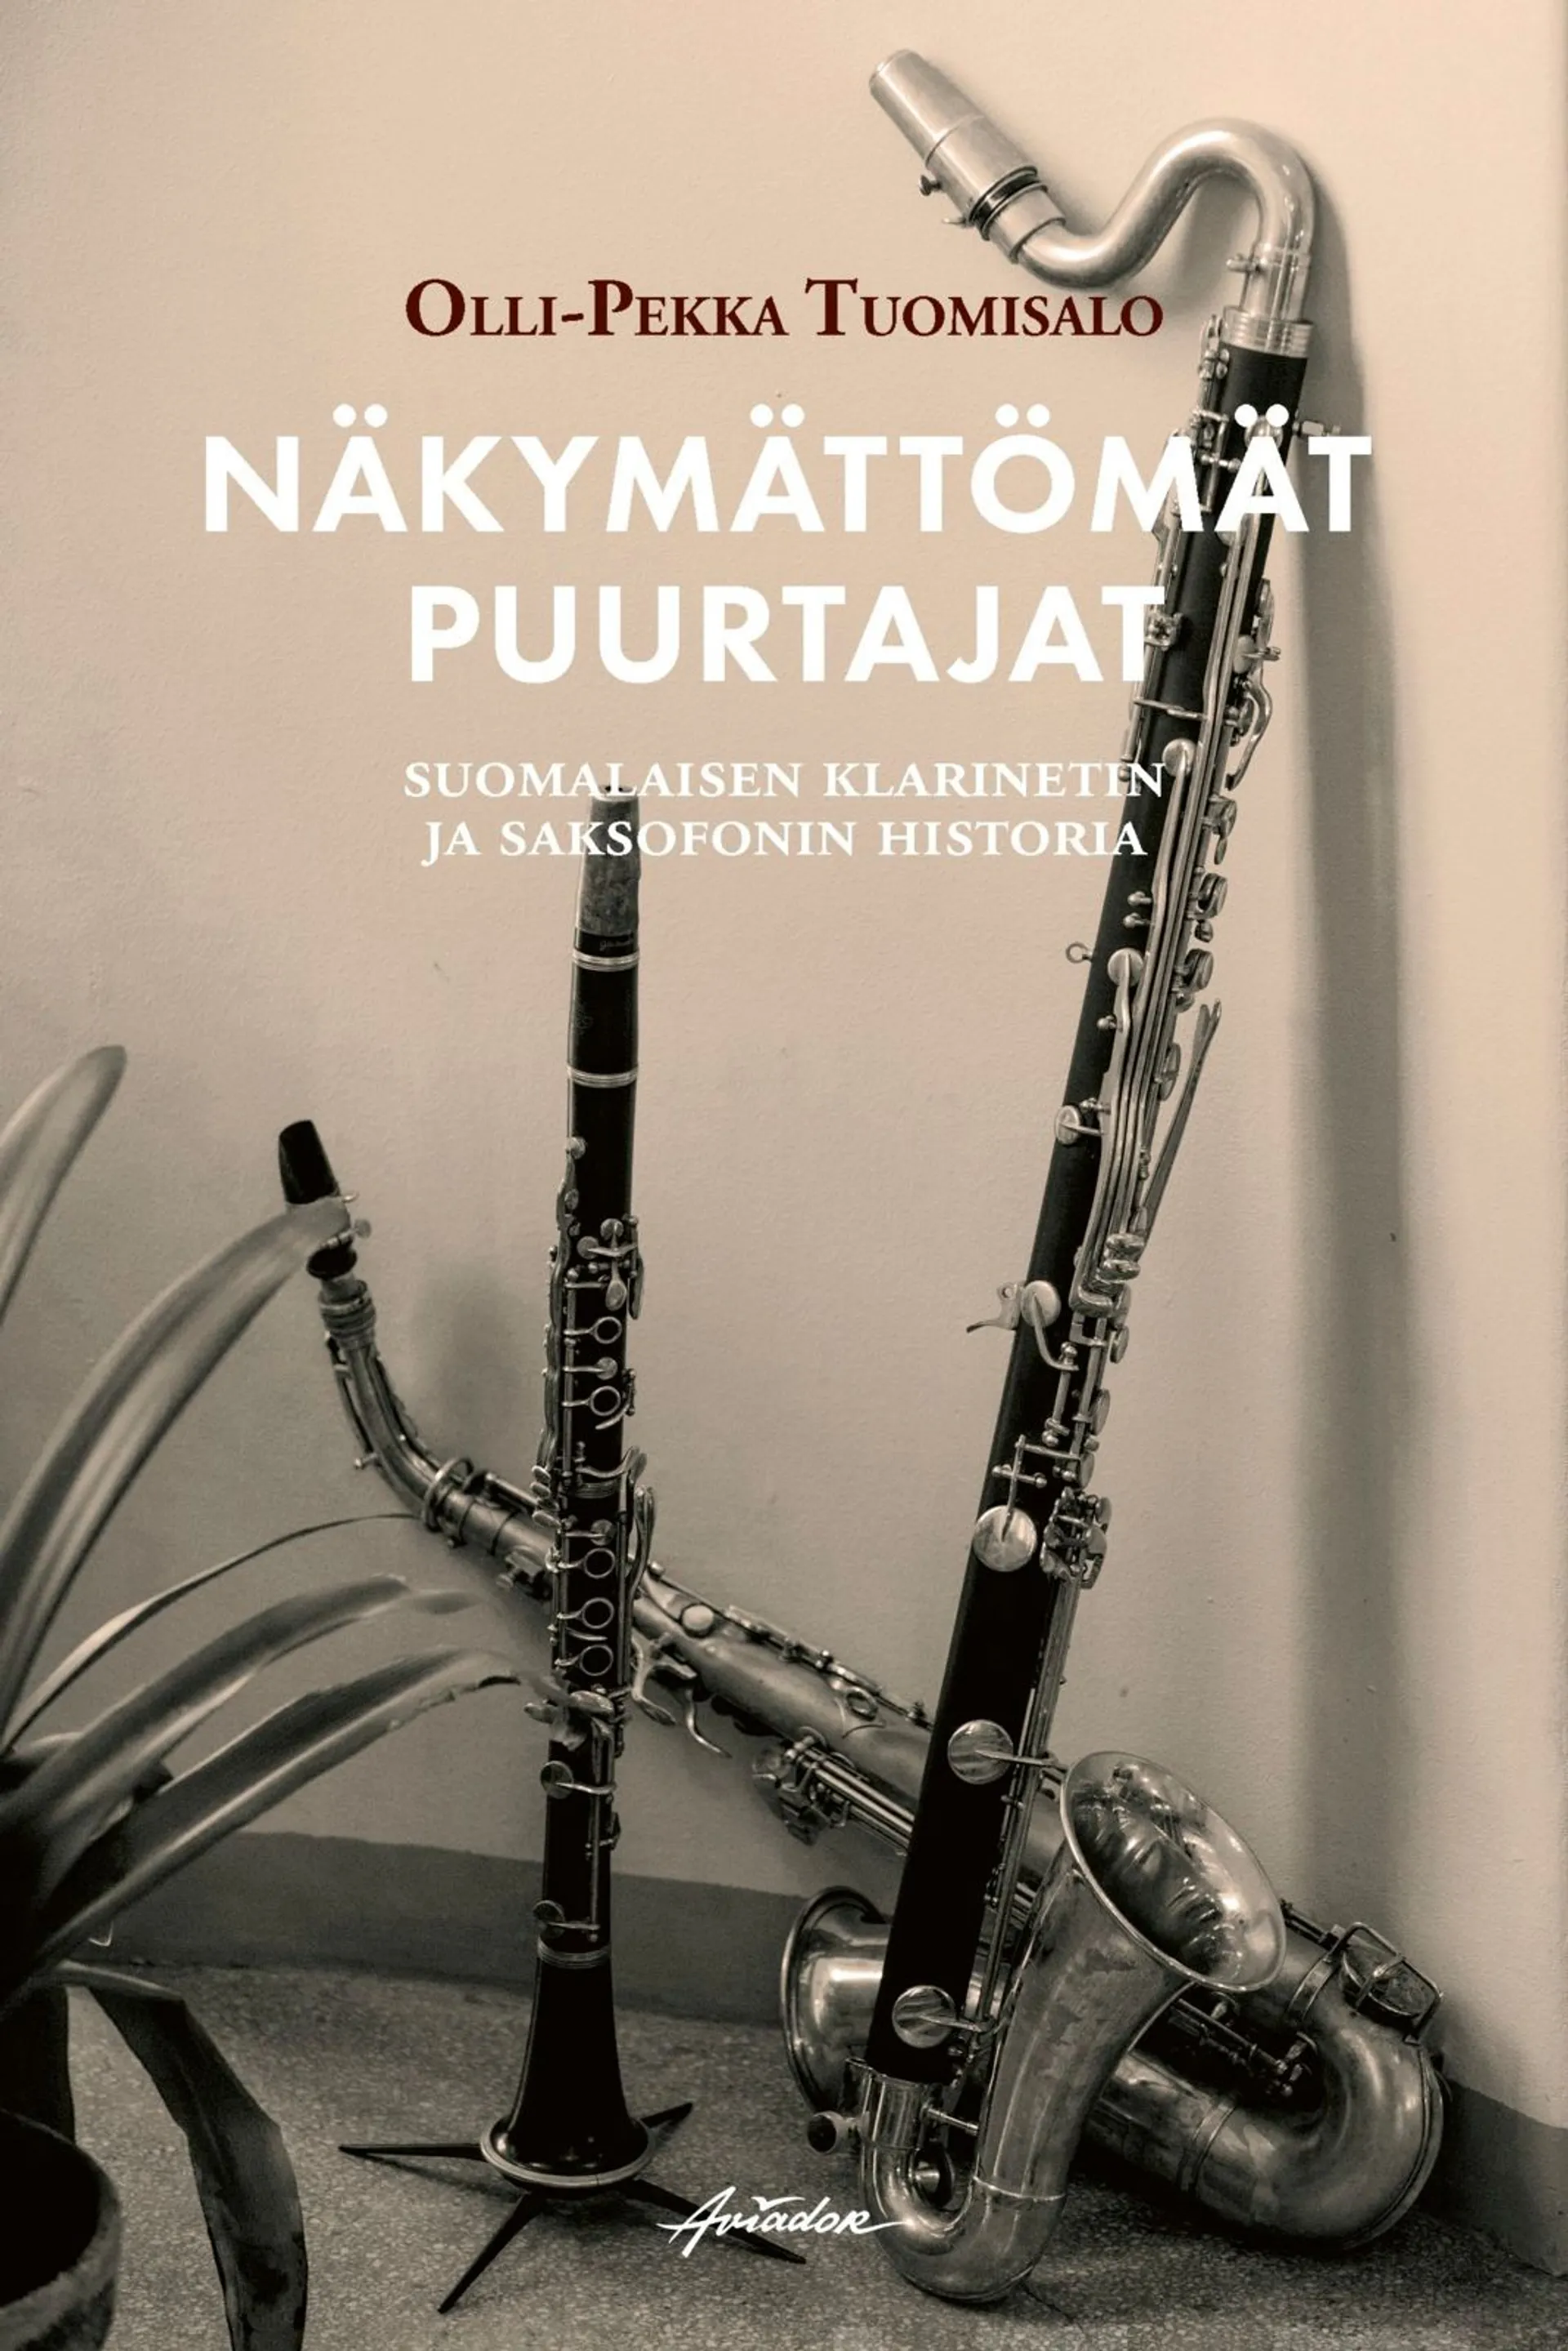 Tuomisalo, Näkymättömät puurtajat - Suomalaisen klarinetin ja saksofonin historia